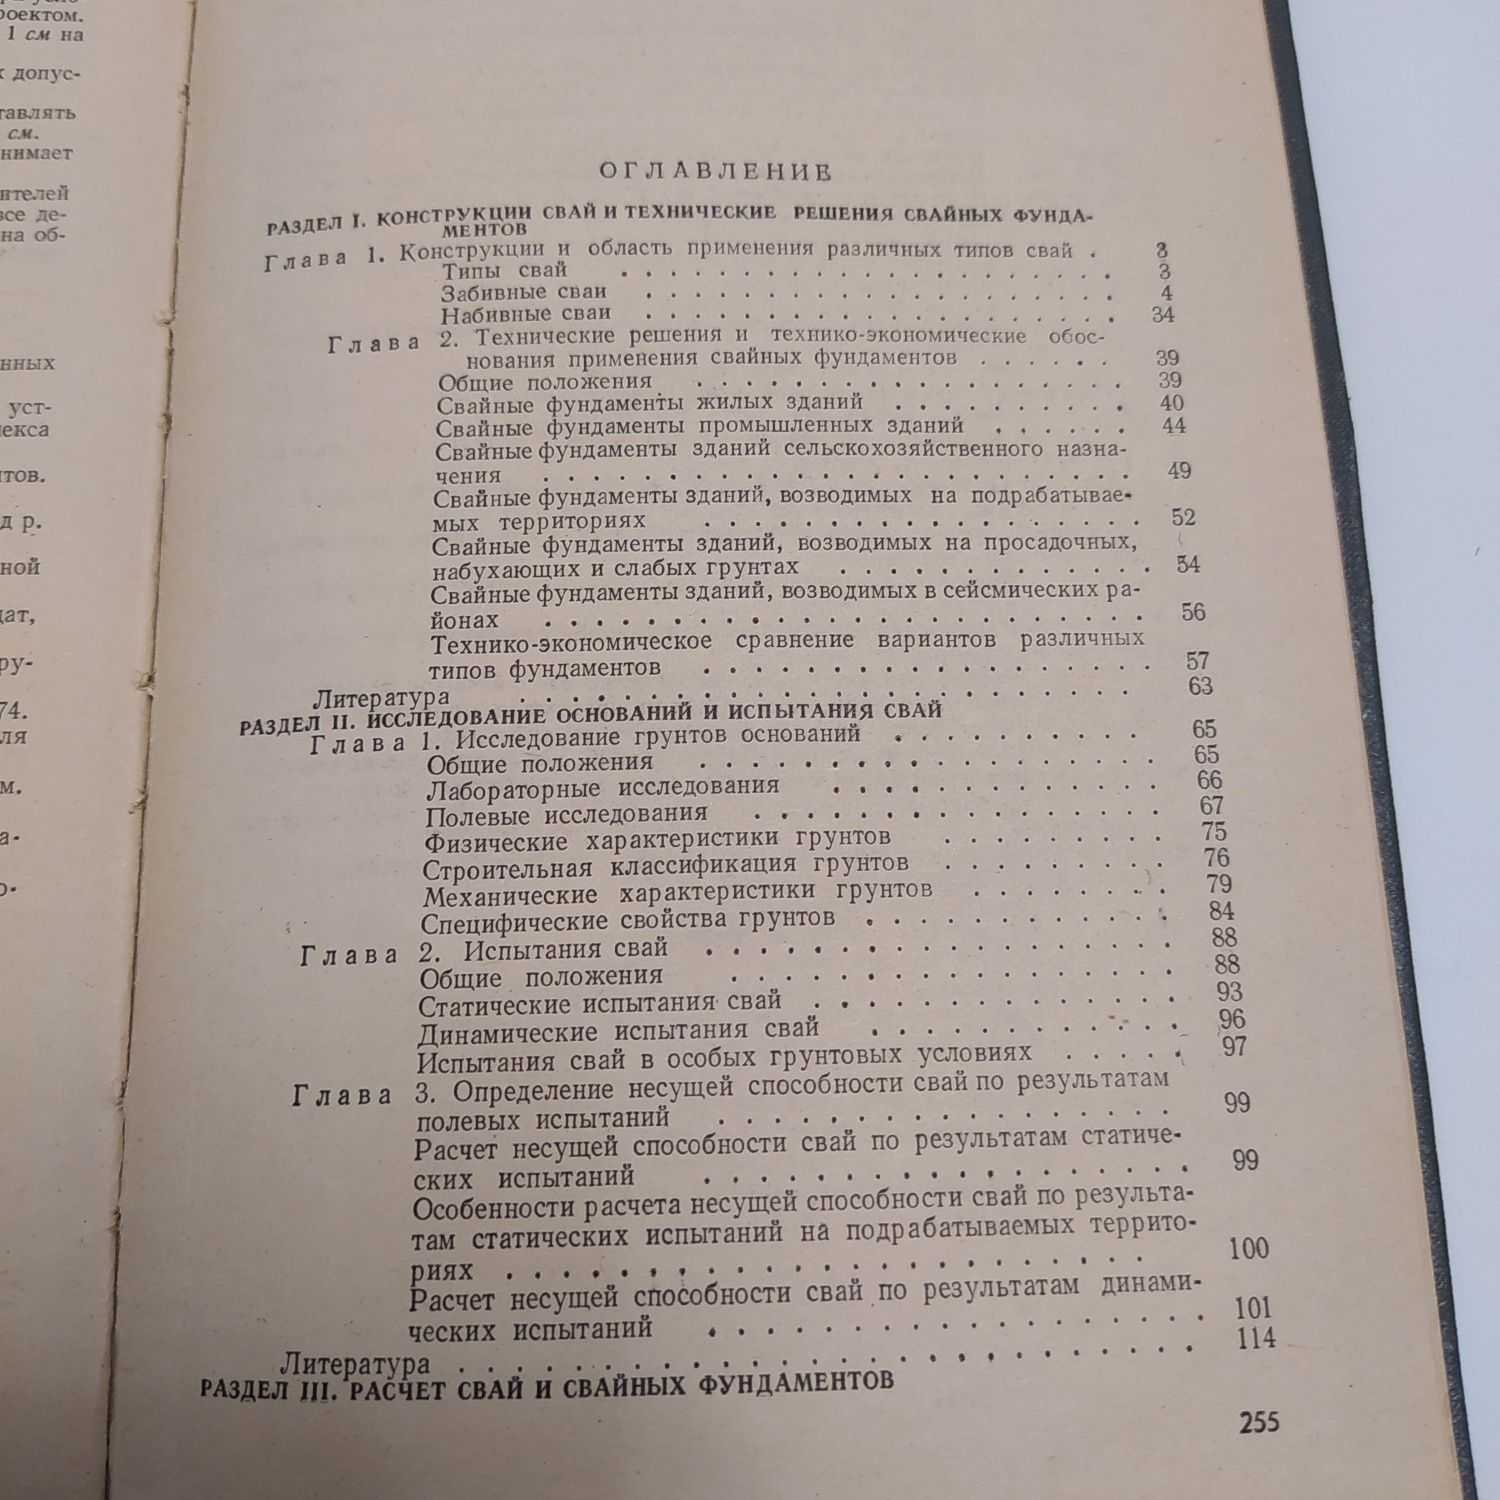 Сваи и свайные фундаменты 1977г. Н.С.Метелюк/Г.Ф.Шишко и др.